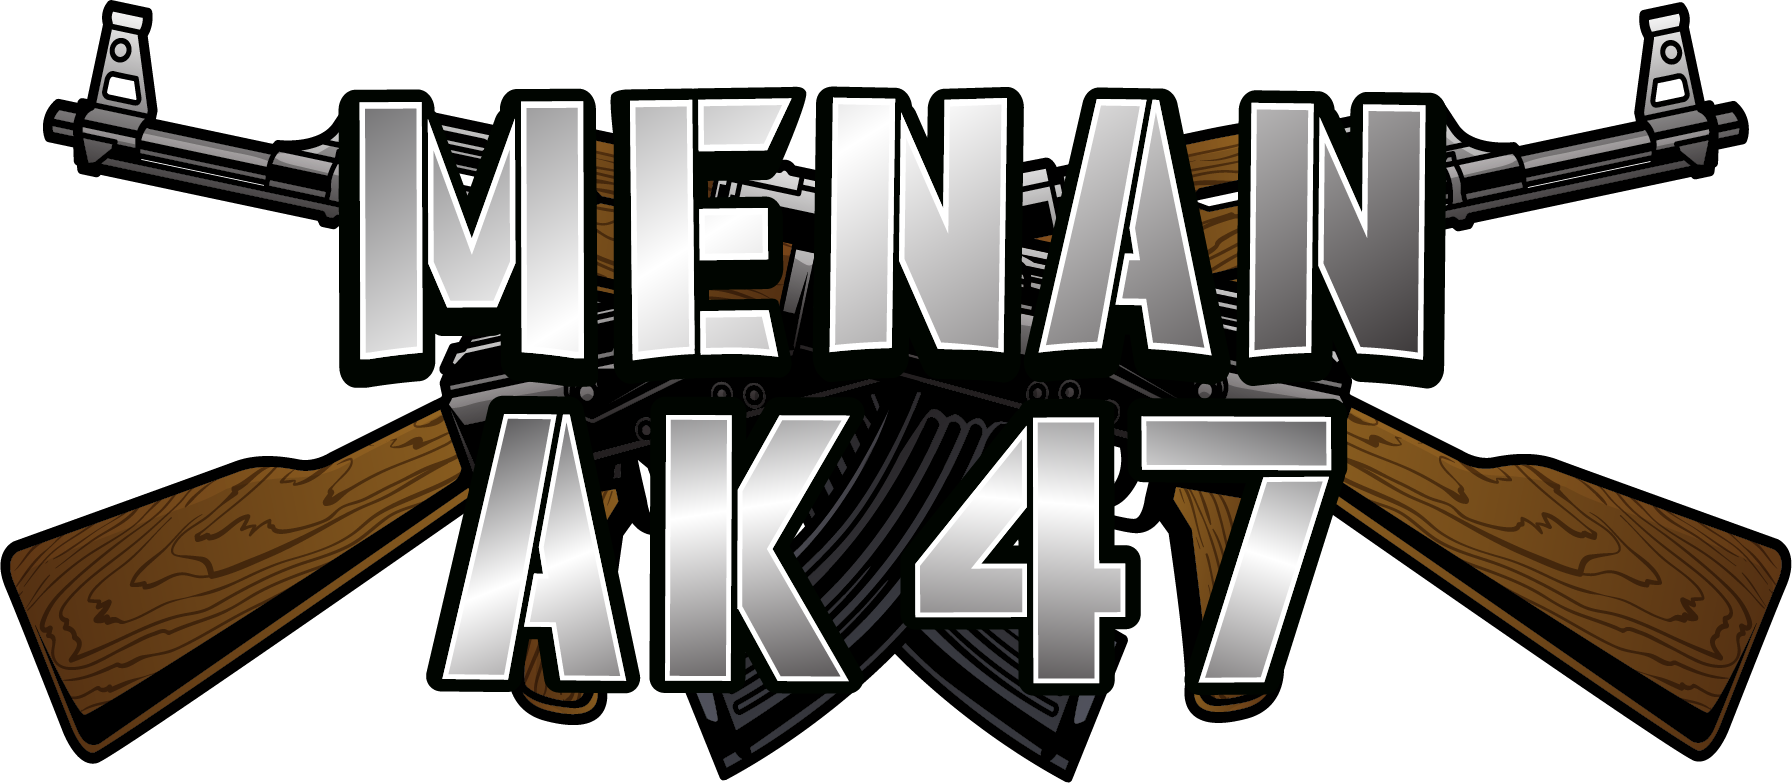 MenanAk47 Logo